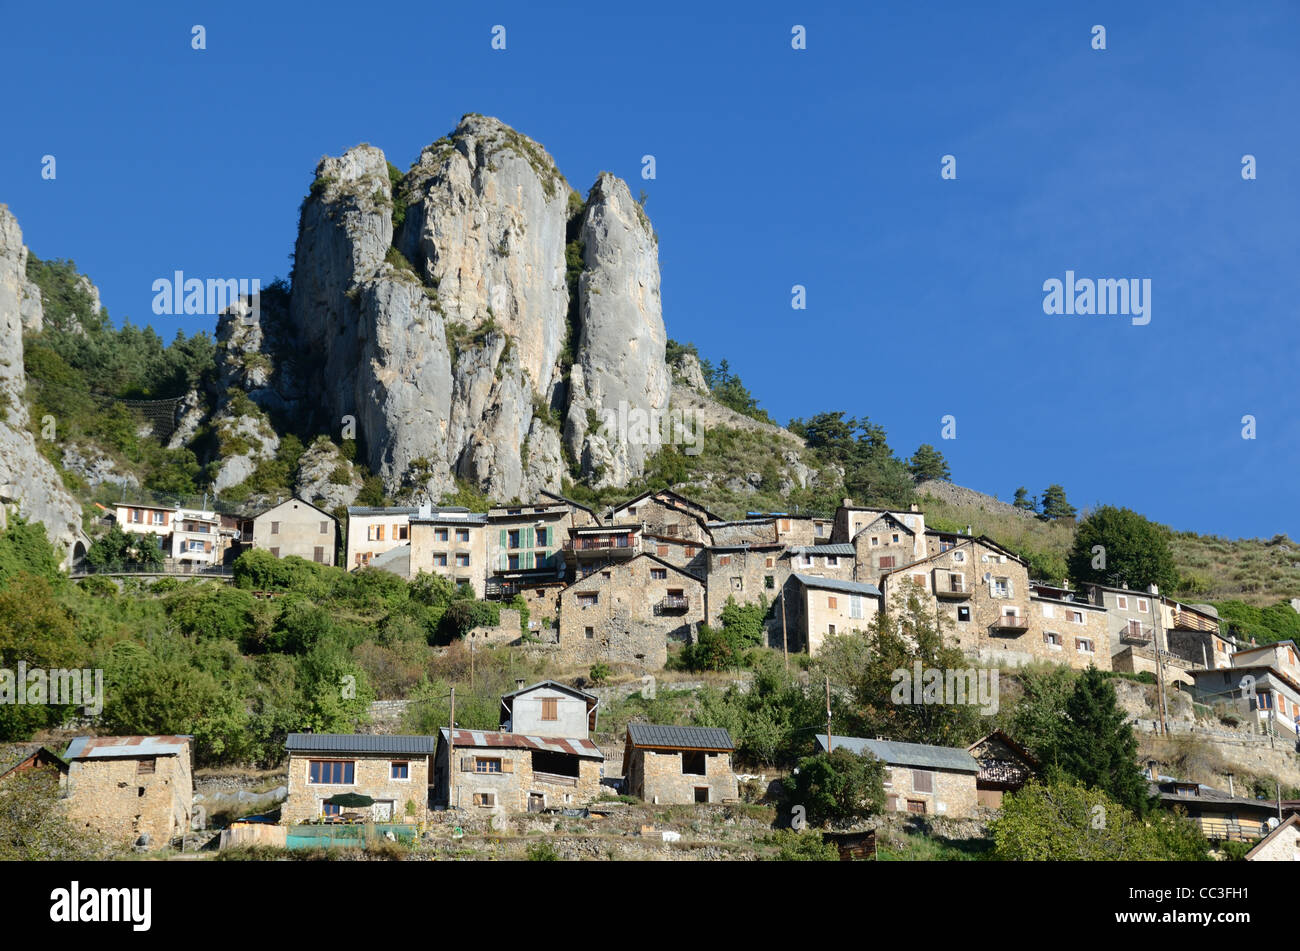 Paesaggio roccioso con il villaggio alpino arroccato di Roubion dominato Da scogliere e affioramento roccioso nel Parco Nazionale del Mercantour Alpes-Maritimes Francia Foto Stock